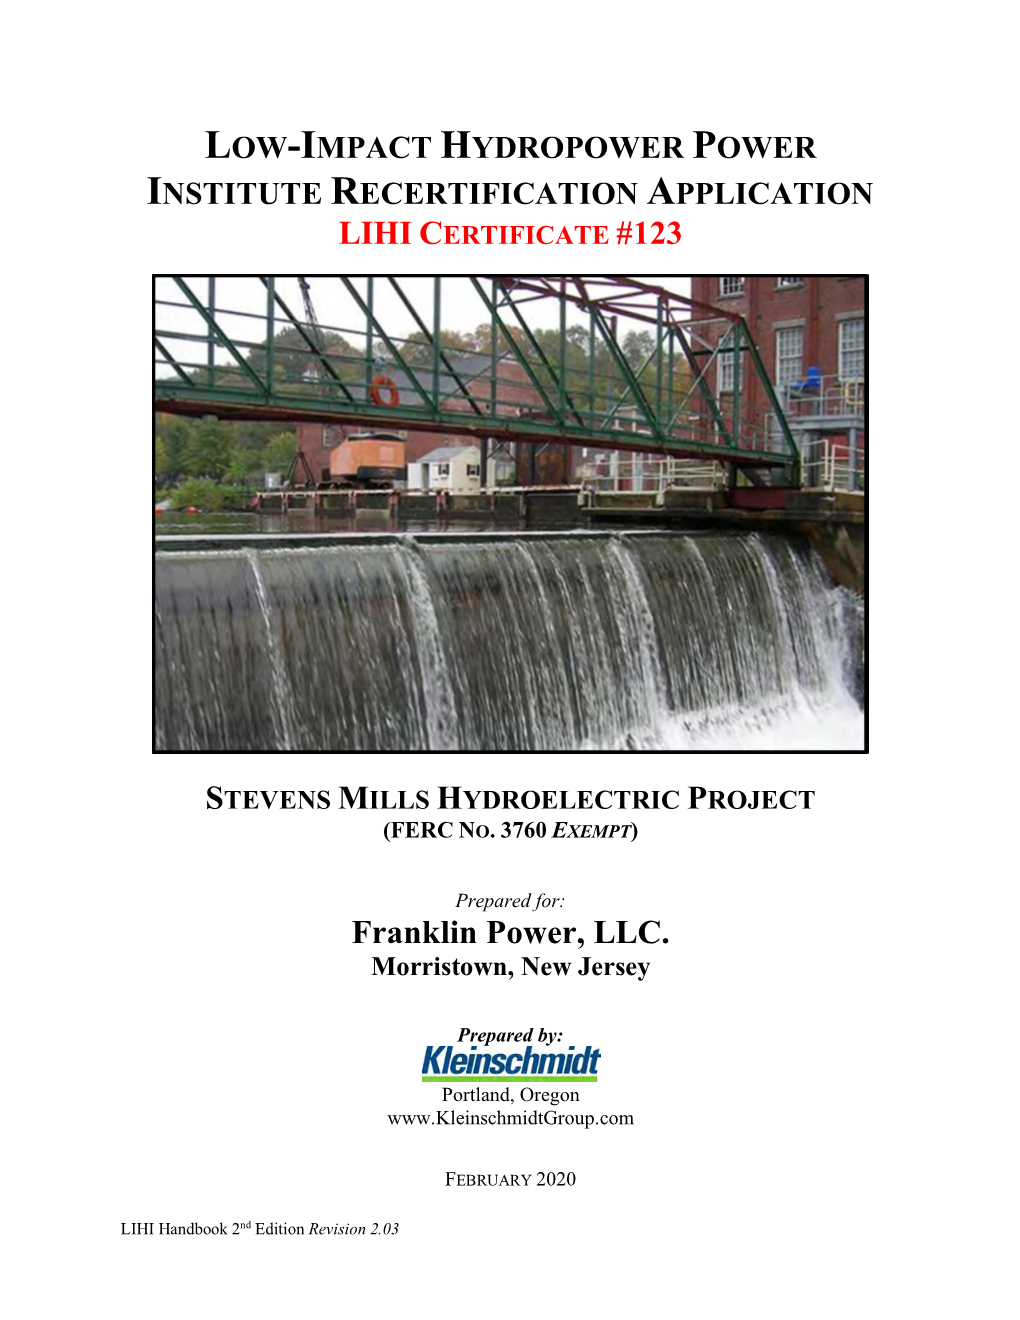 Stevens Mill Recertification Application 2020